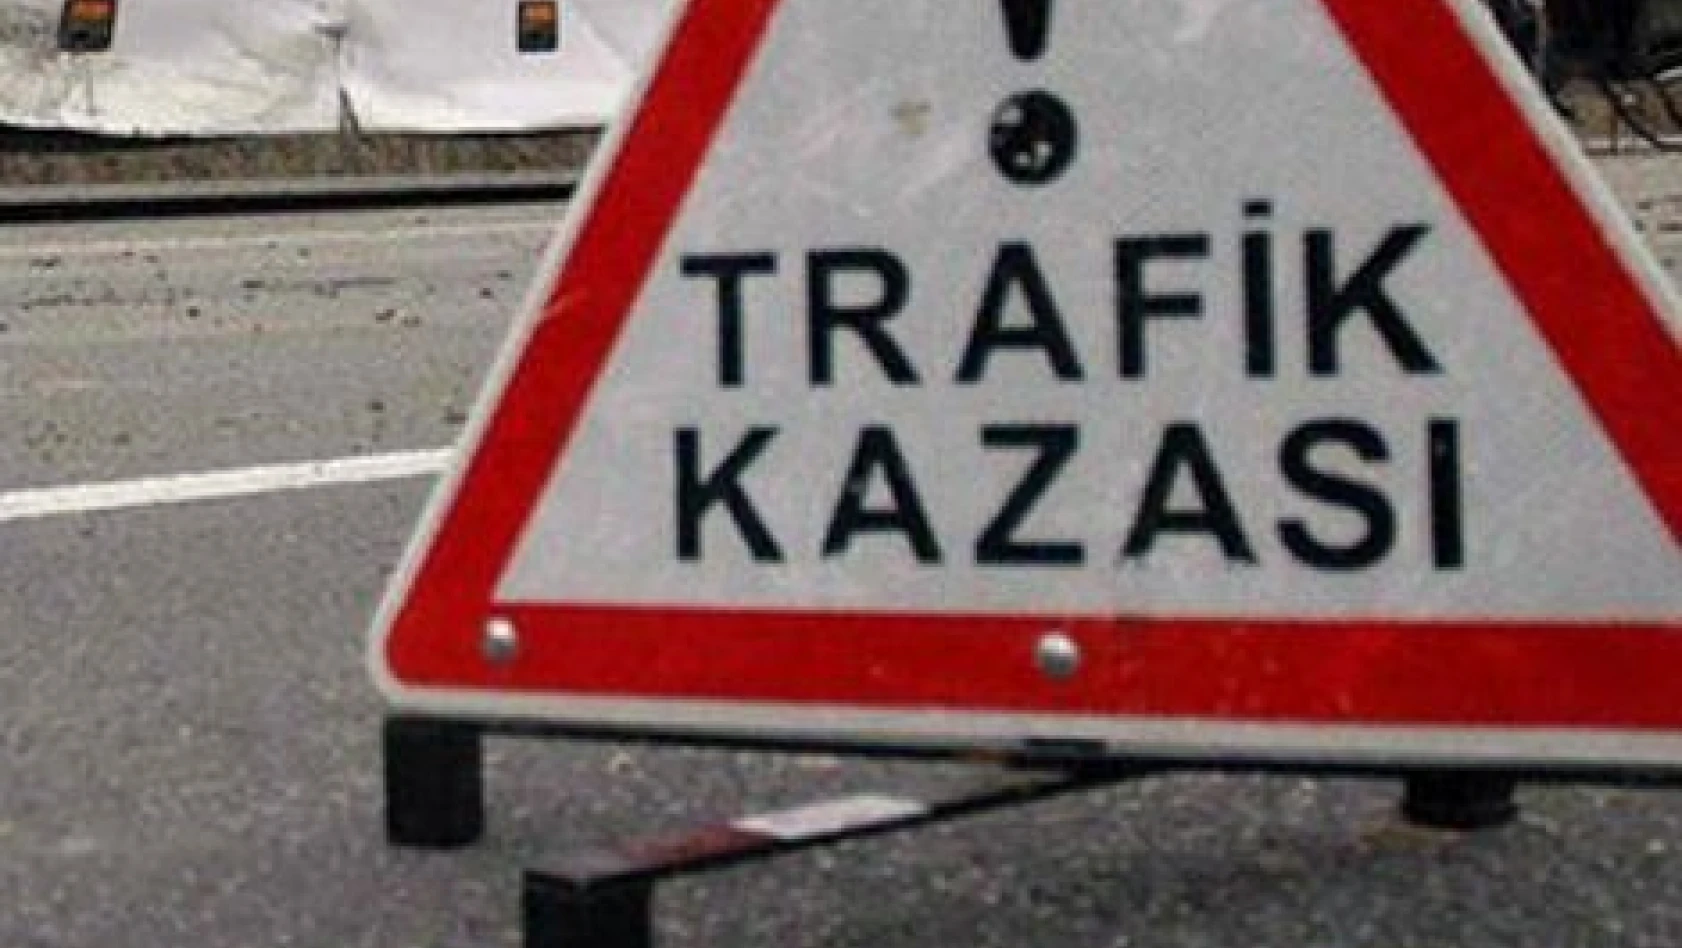 Kayseri'deki trafik kazasında 3 kişi yaralandı